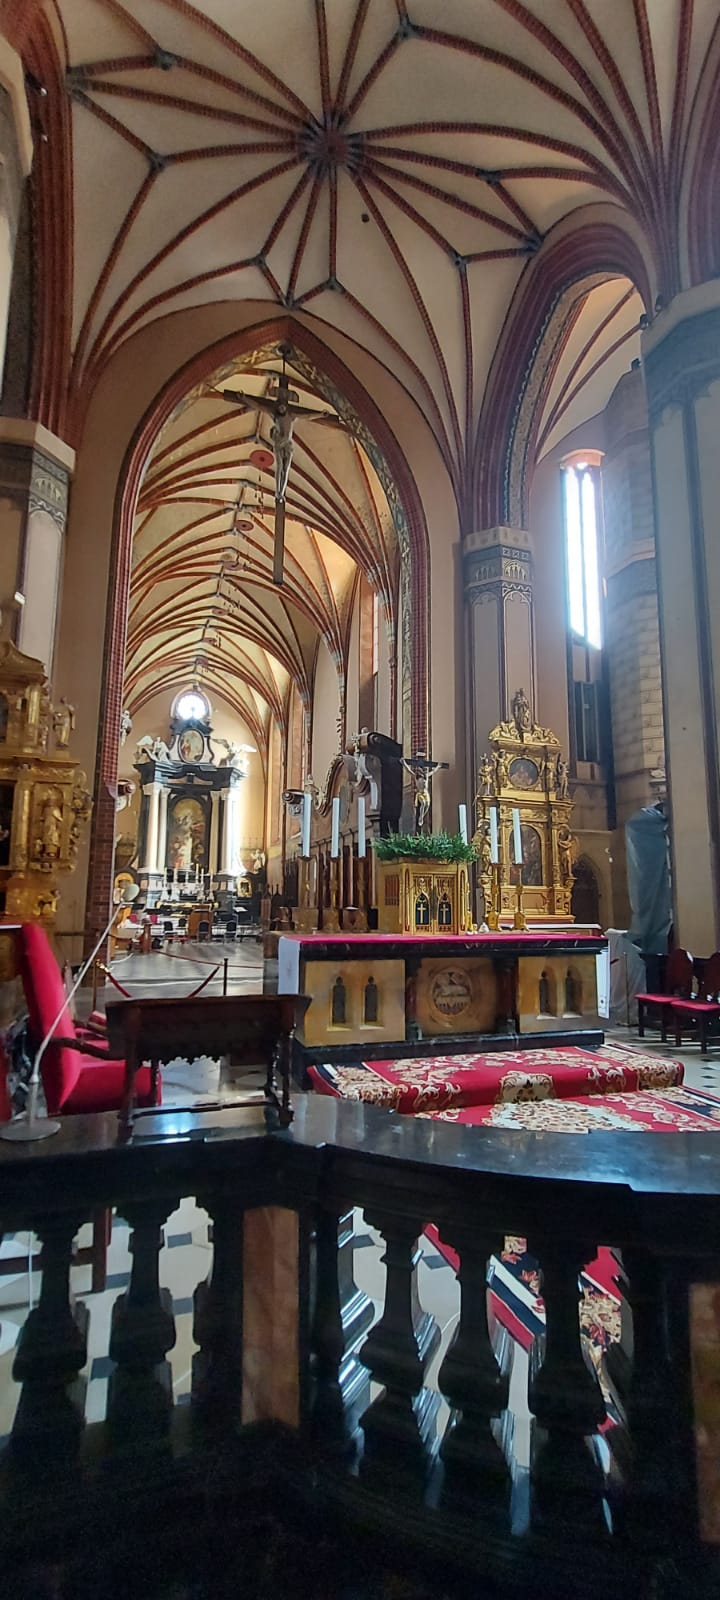 Katedra ze środka, sklepione sufity, złote obrazy oraz figury na ołtarzu oraz za nim.